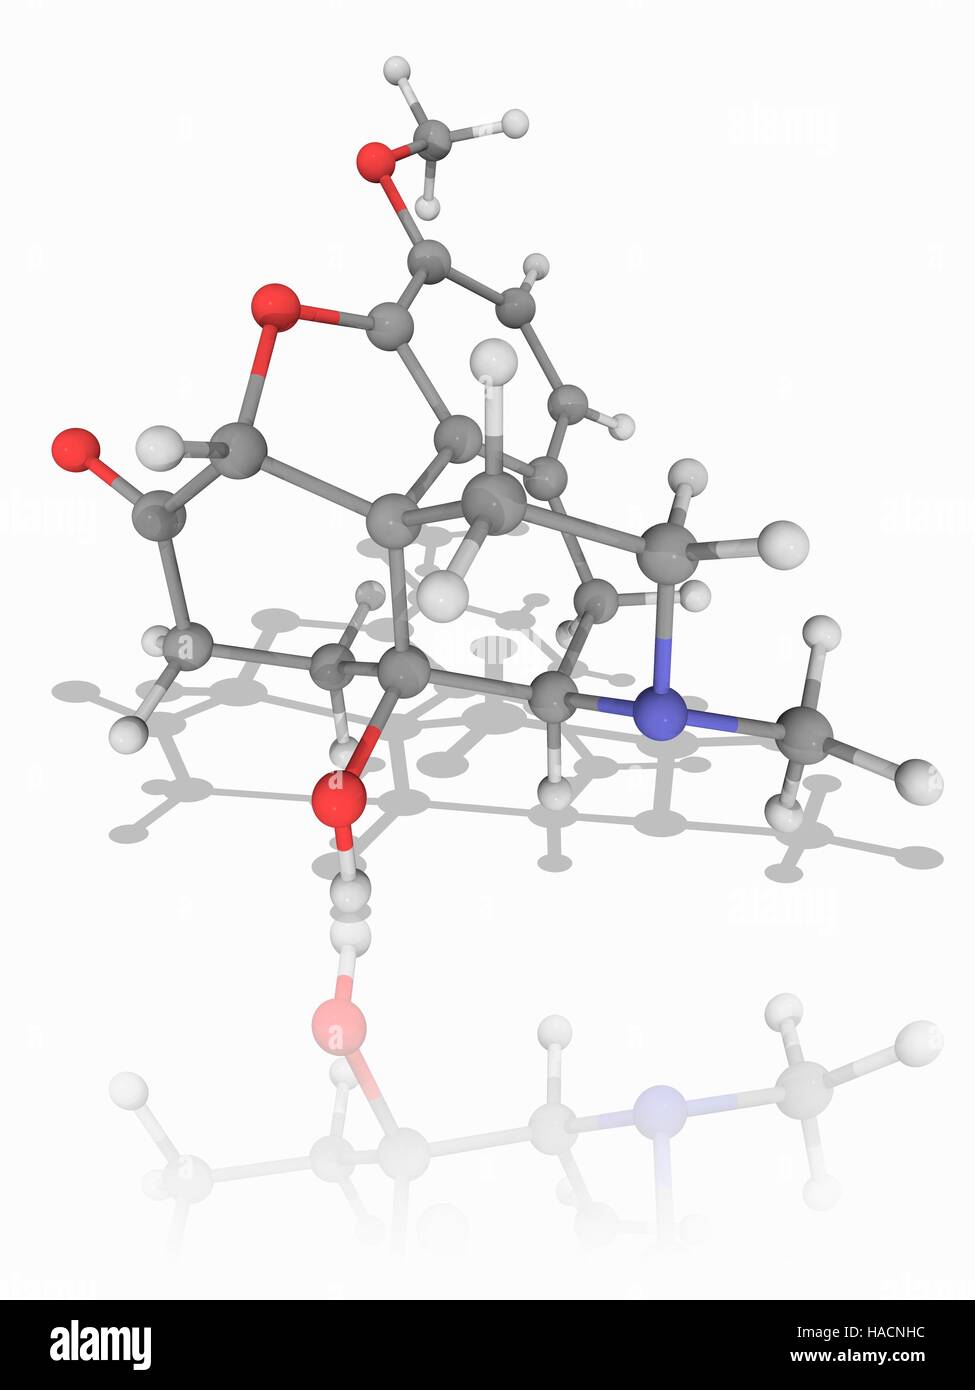 Oxycodon. Molekülmodell von opioid-Analgetikum Oxycodon (C18. H21. N.O4), zur Behandlung von mittelschwerer bis schwerer Schmerz. Atome als Kugeln dargestellt werden und sind farblich gekennzeichnet: Kohlenstoff (grau), Wasserstoff (weiß), Stickstoff (blau) und Sauerstoff (rot). Abbildung. Stockfoto